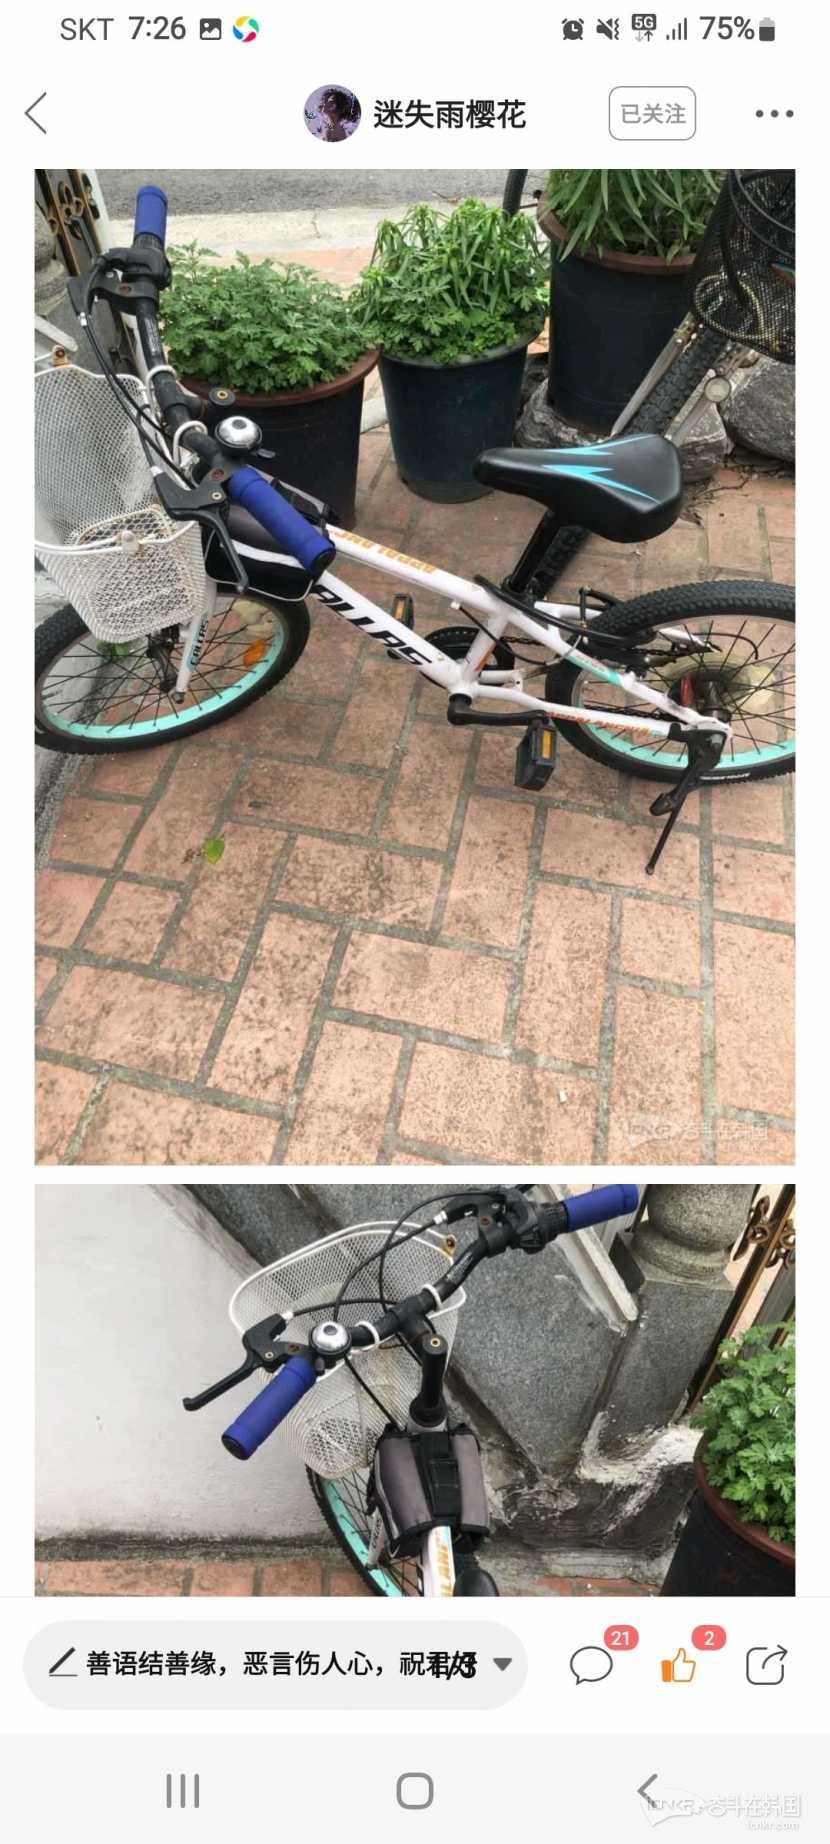 卖一辆自行车，孩子大了不适合了。